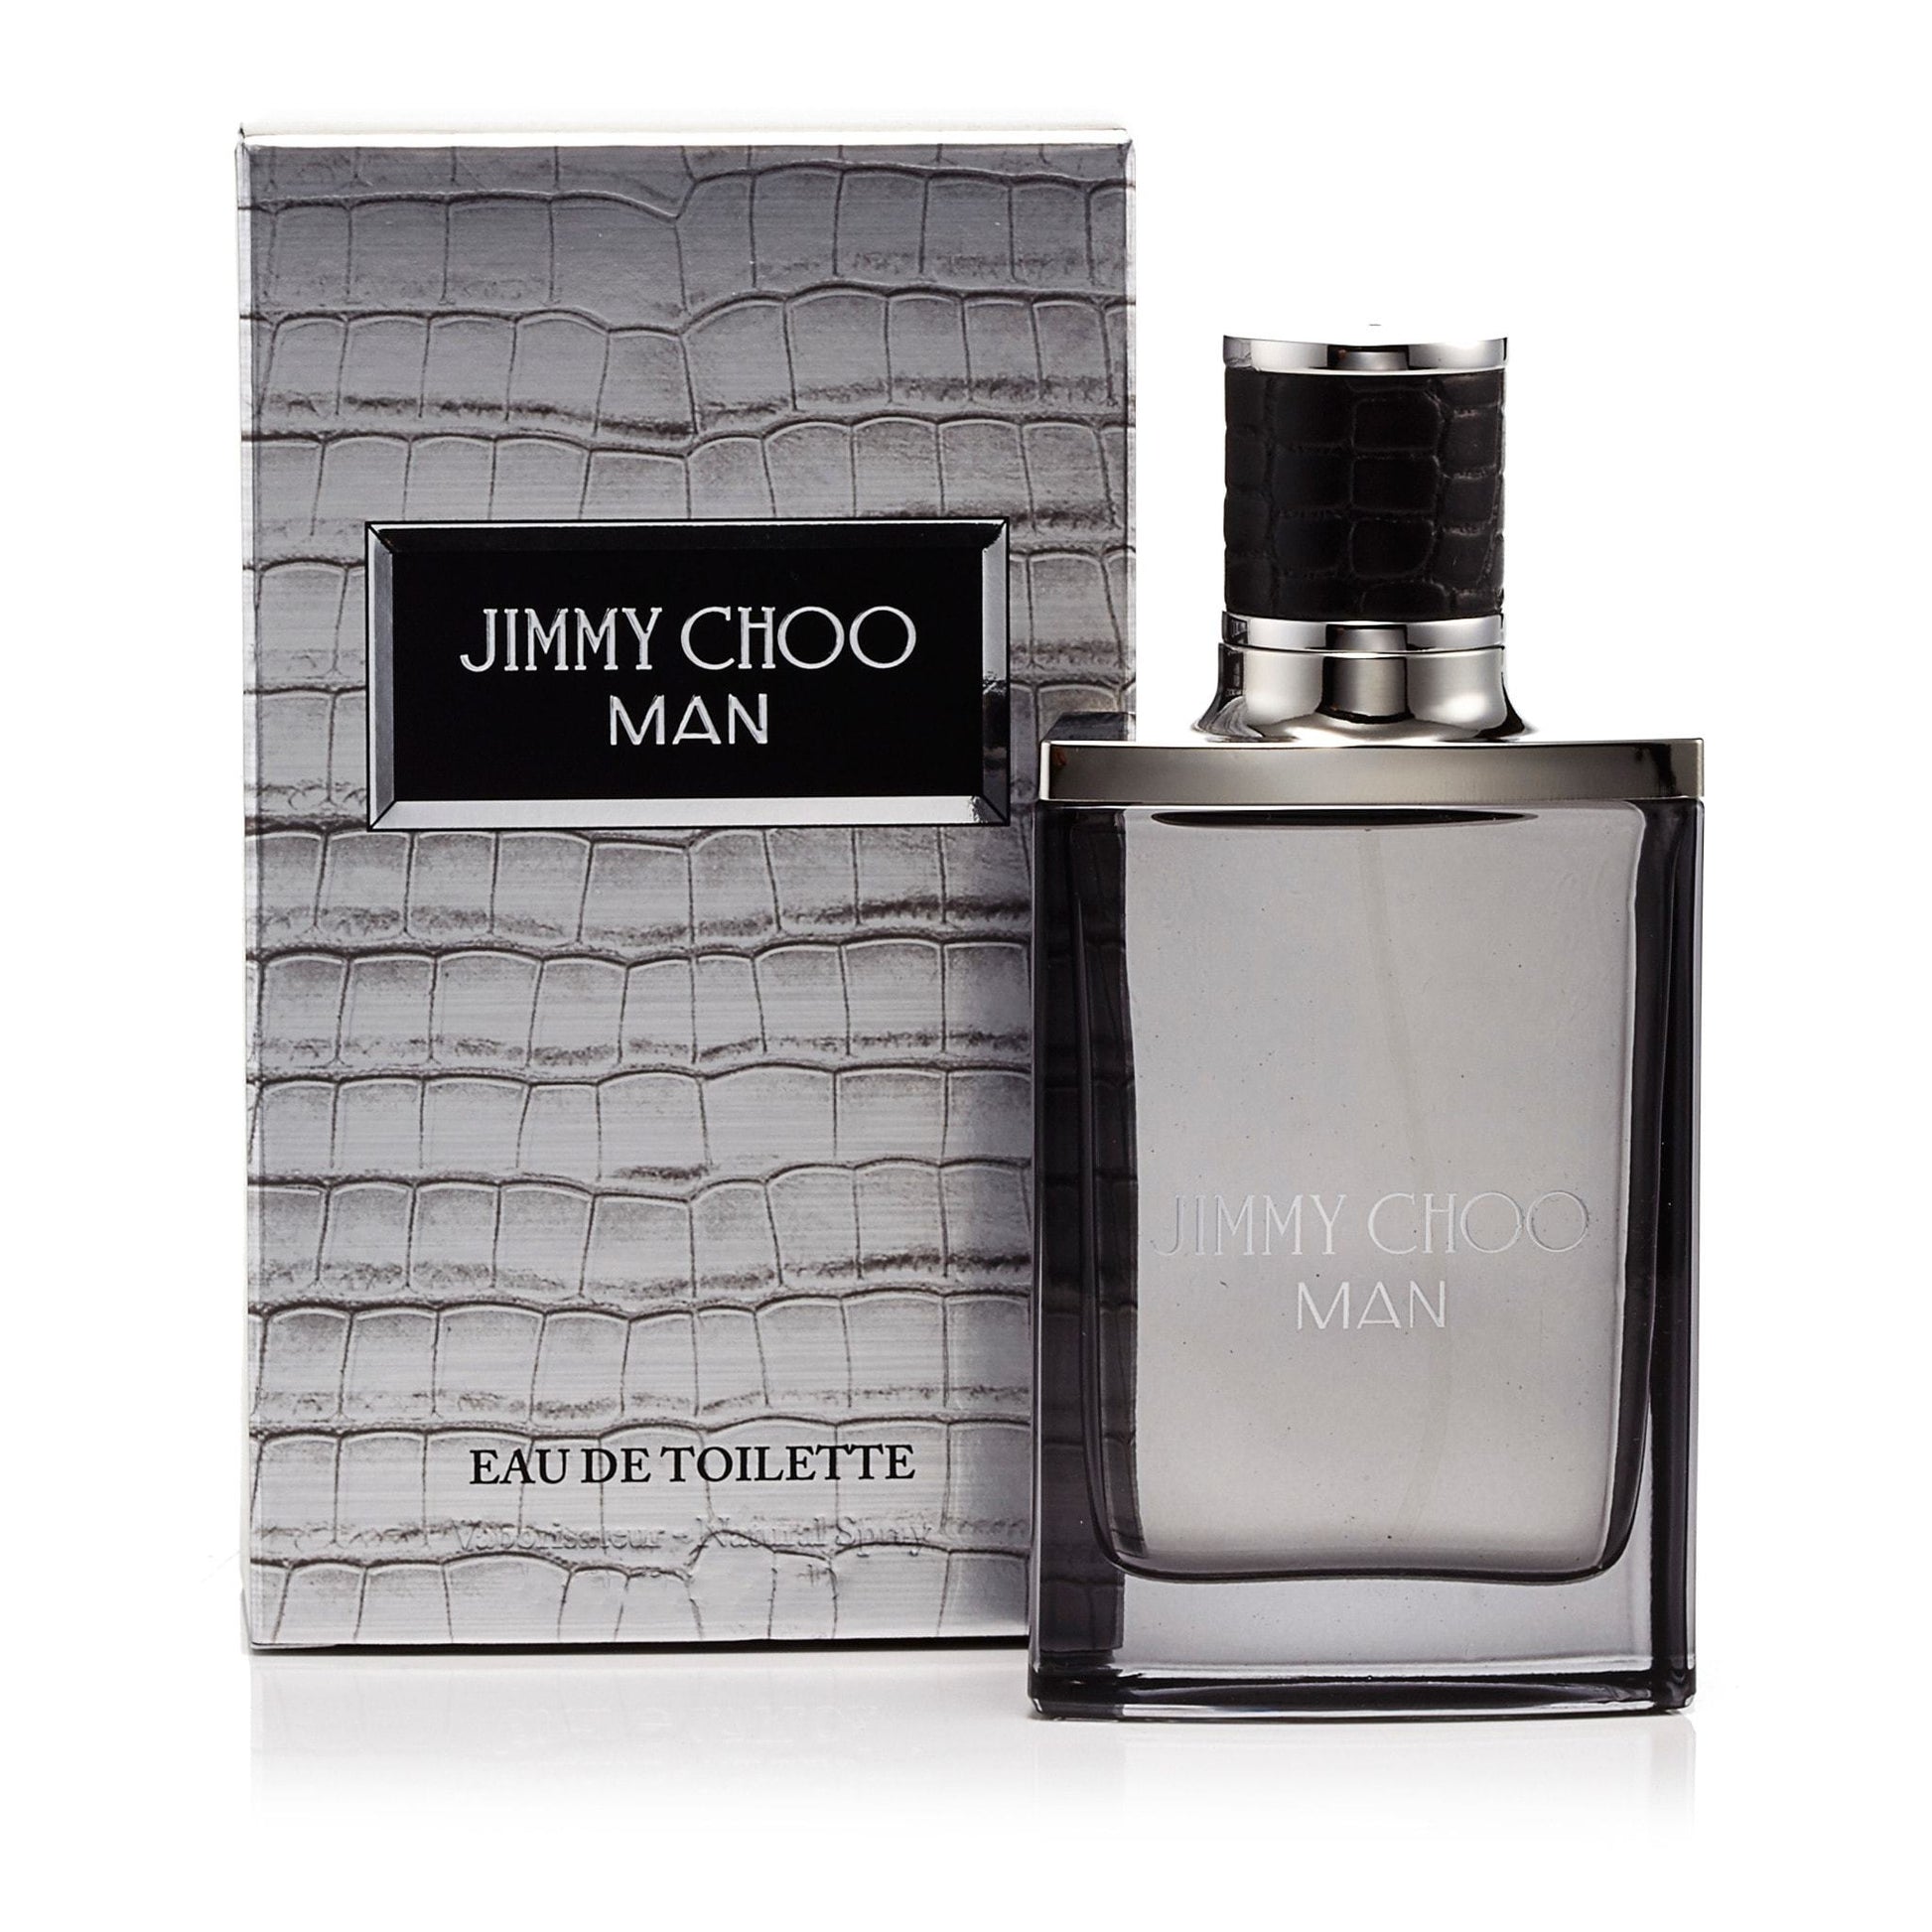 Jimmy Choo Man Eau de Toilette Spray for Men by Jimmy Choo, Product image 6